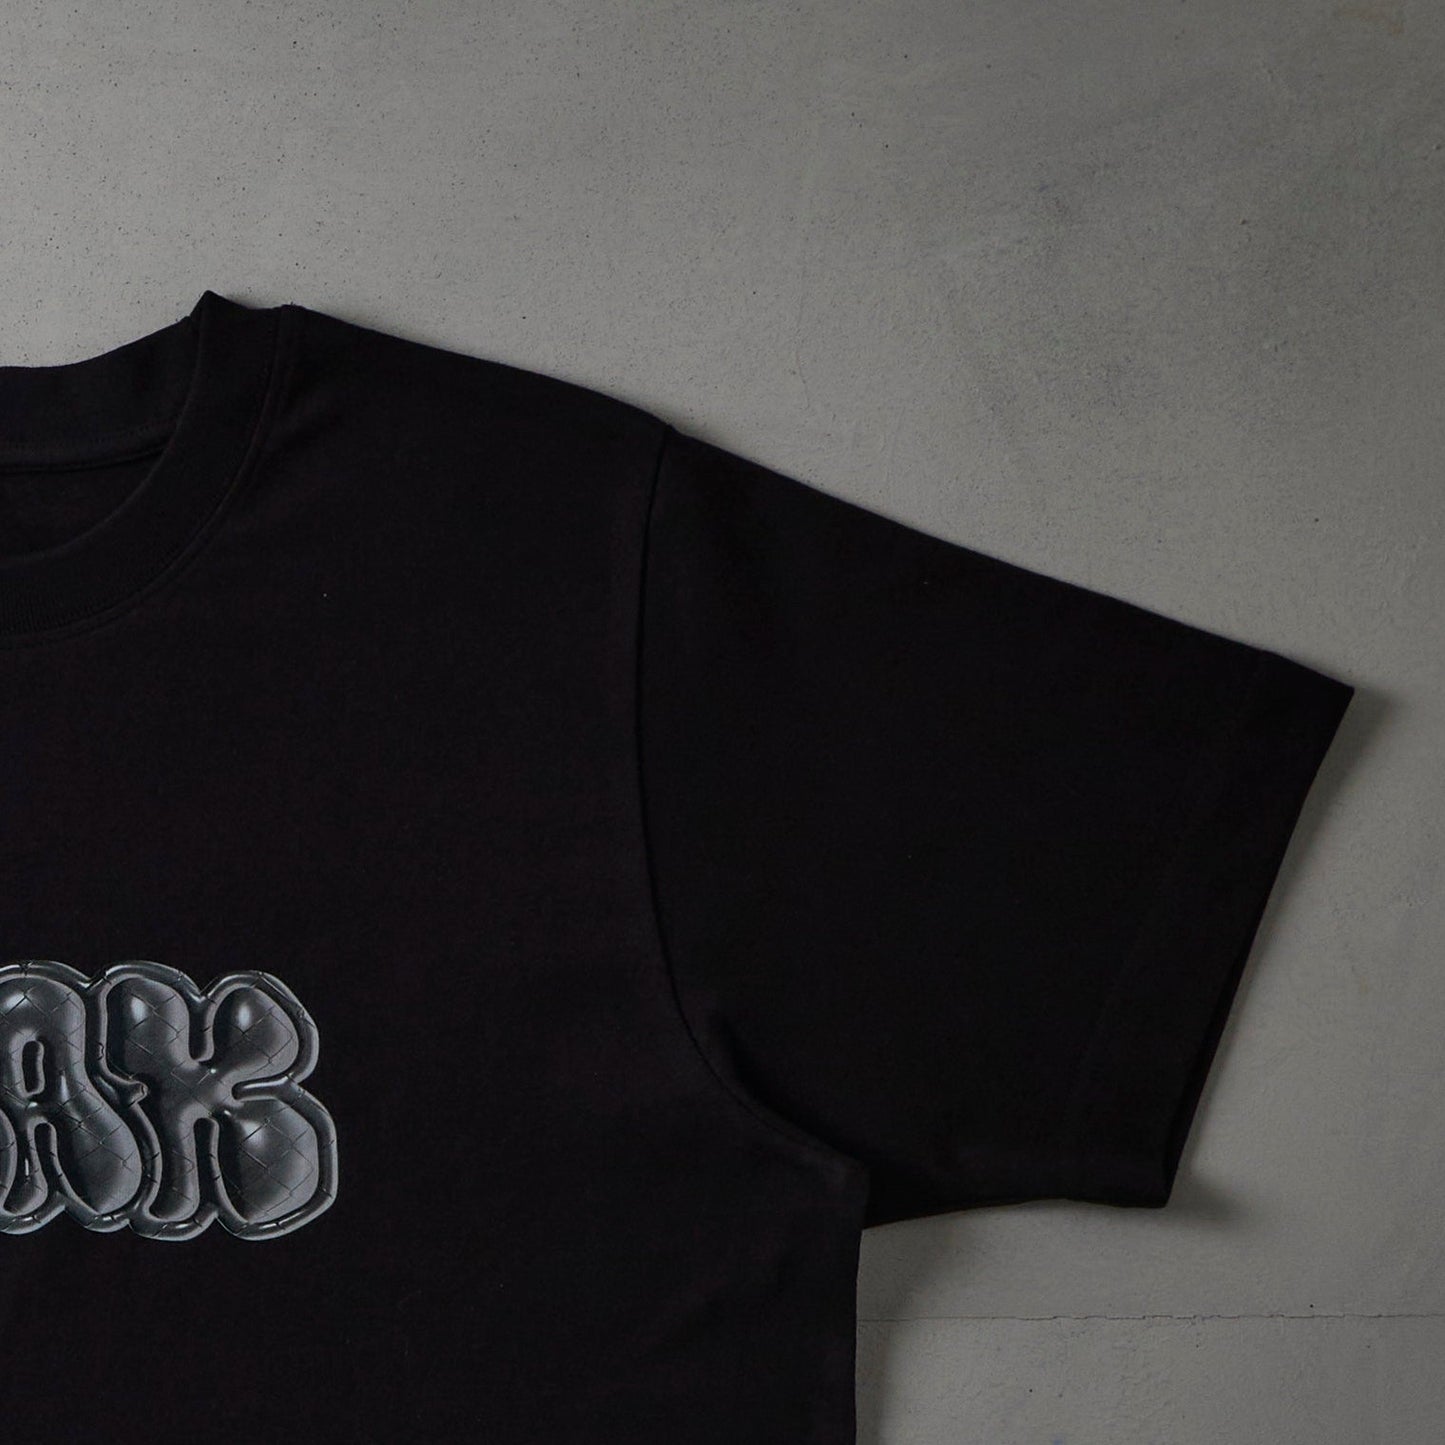 Stax 3D T-shirt Black